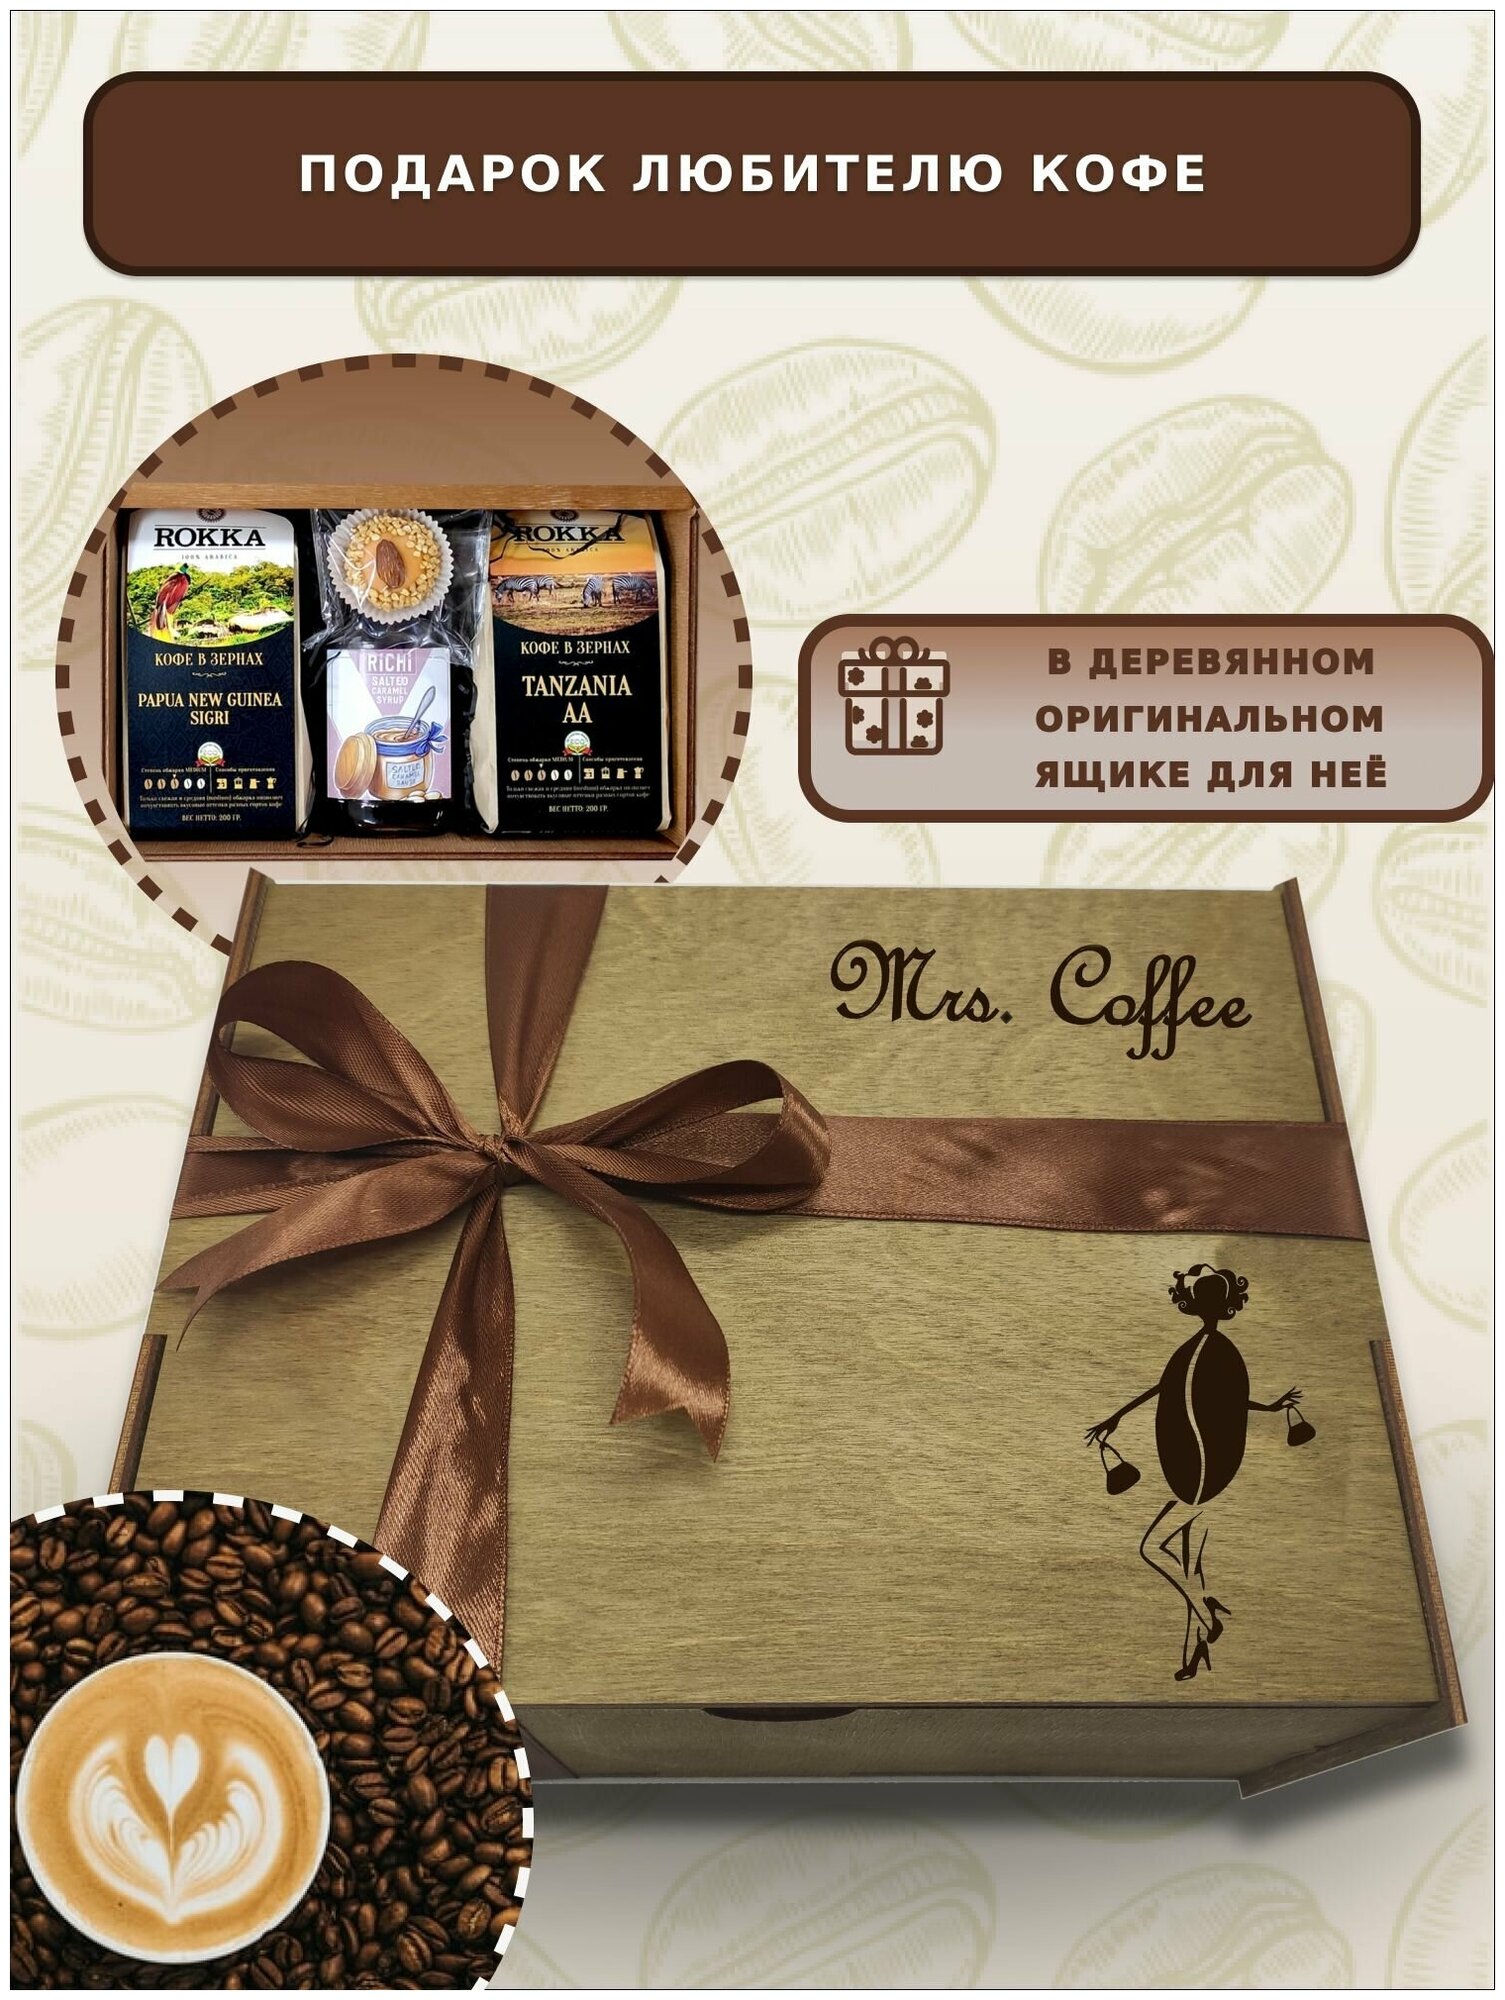 Набор подарочный из 2 видов кофе в зёрнах, сиропа и марципана "Mrs Coffee" для женщин Dyetshop